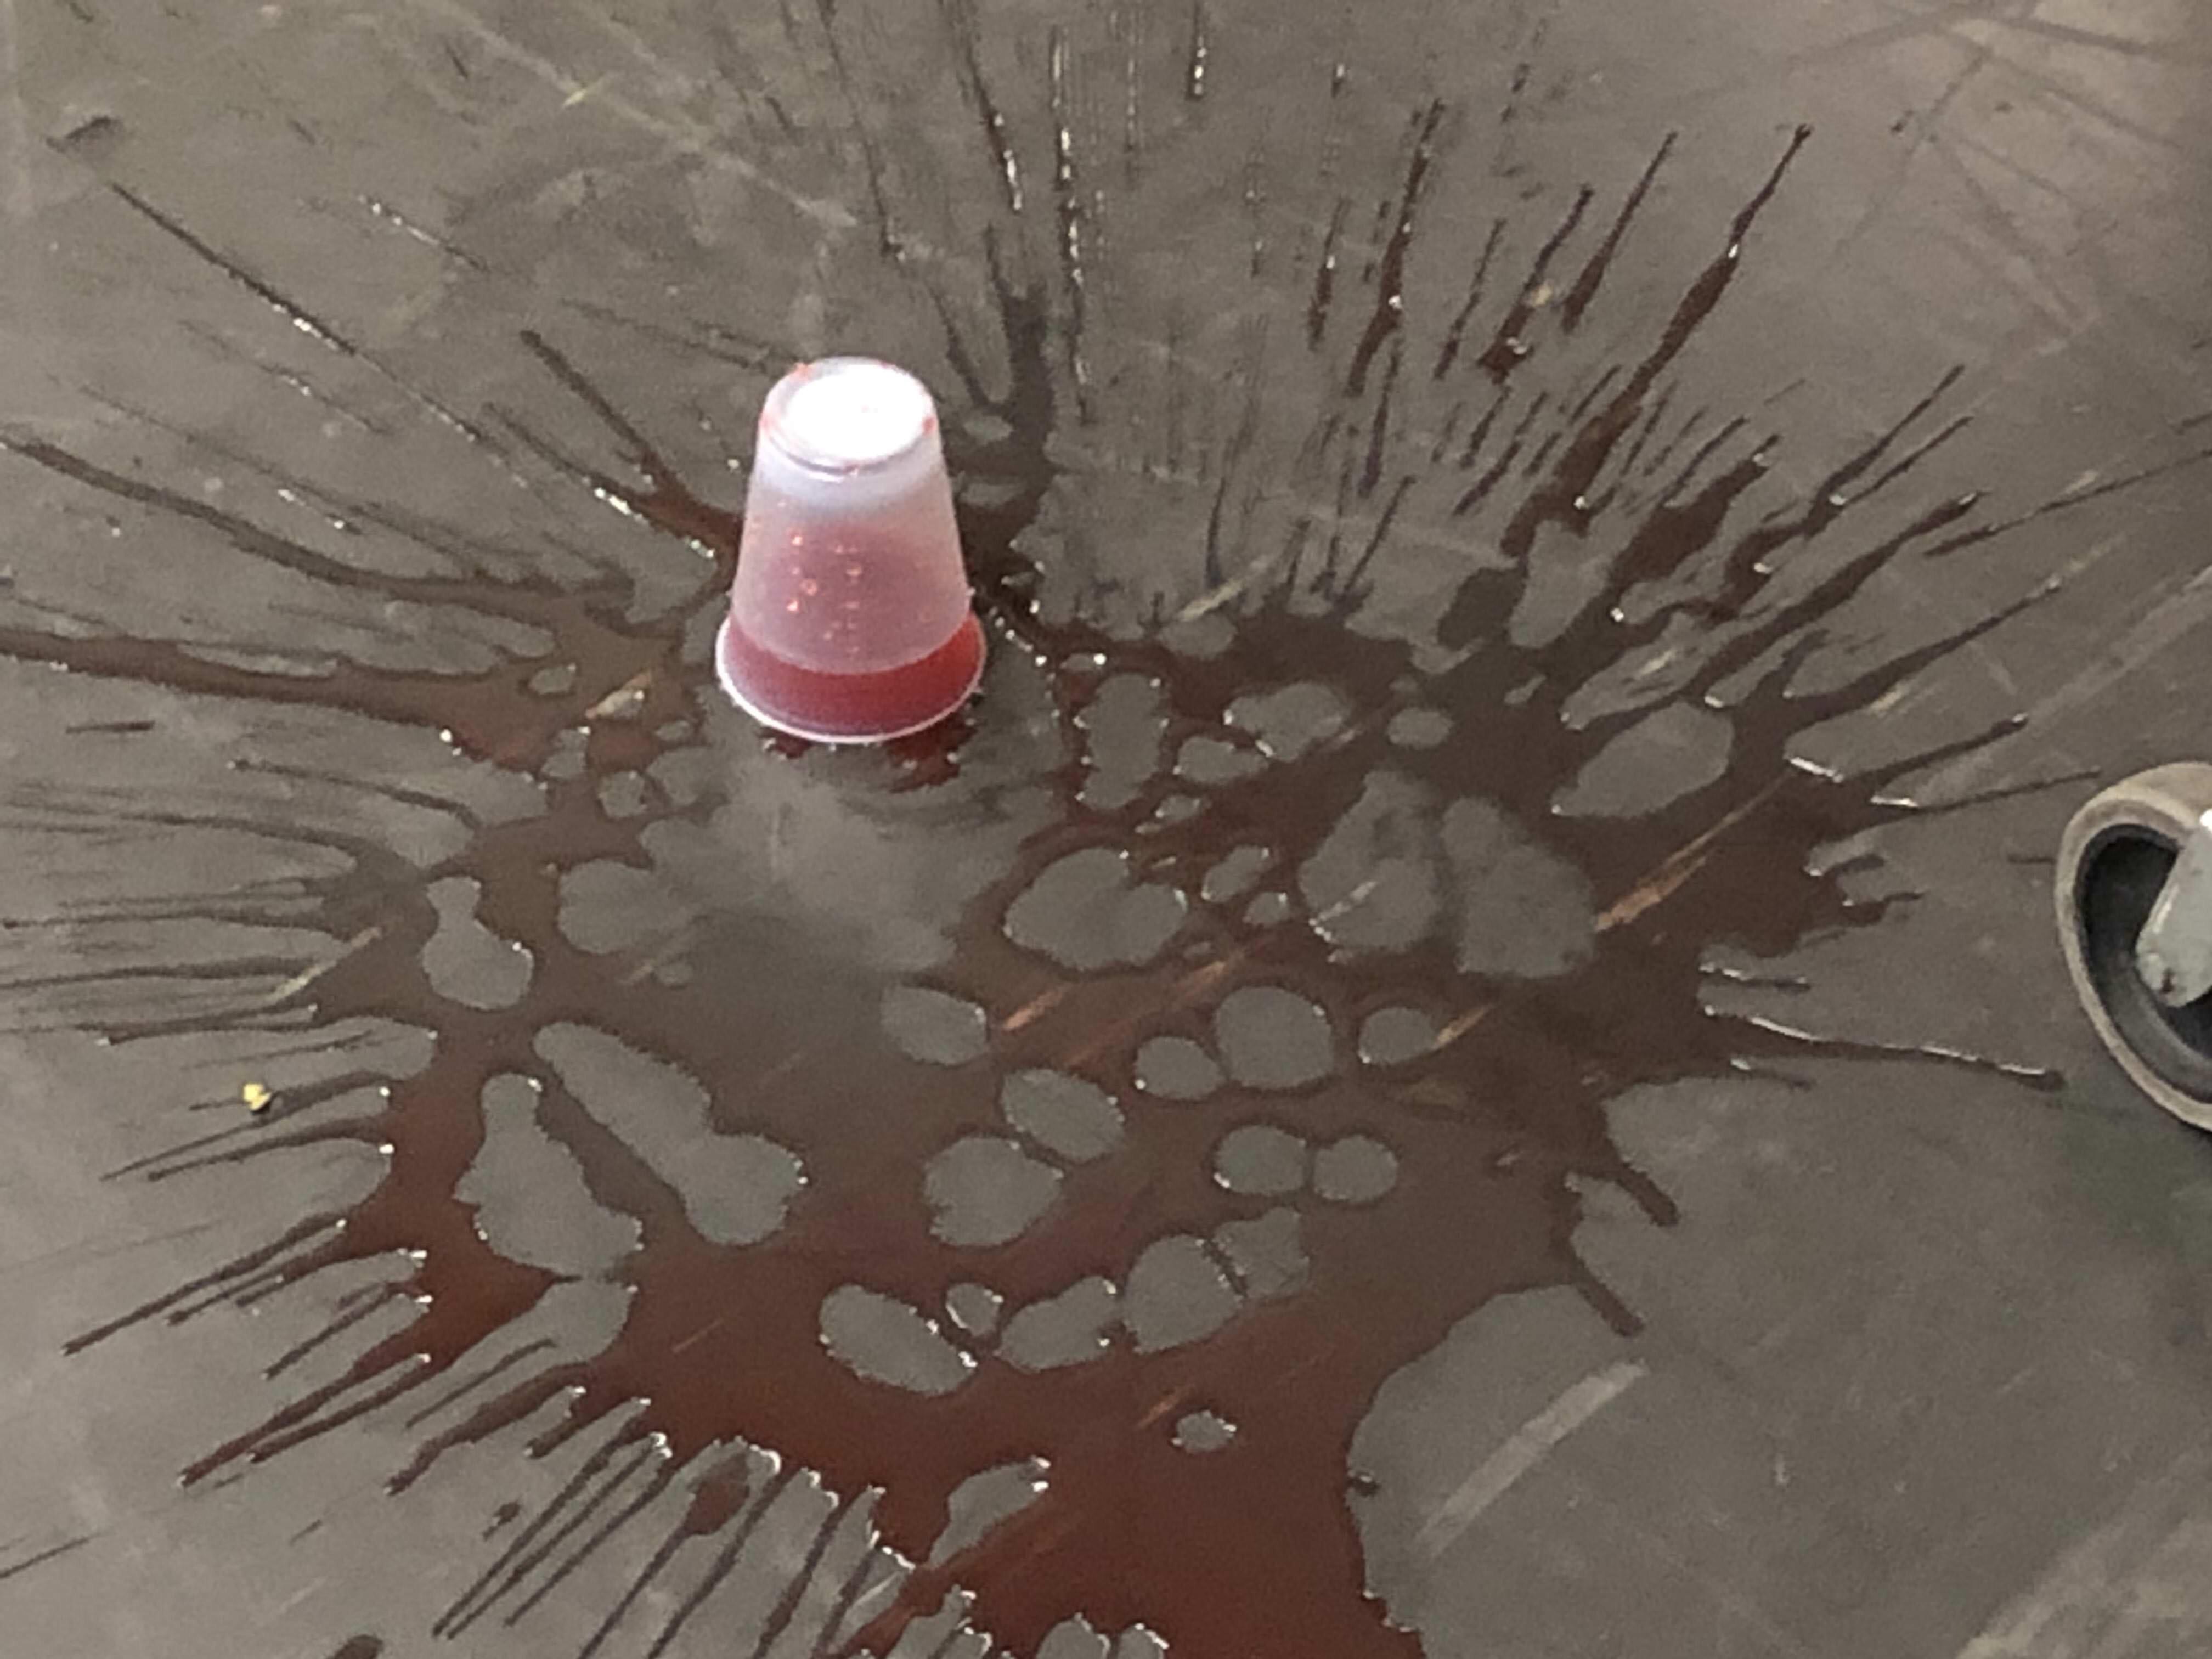 spilled drink